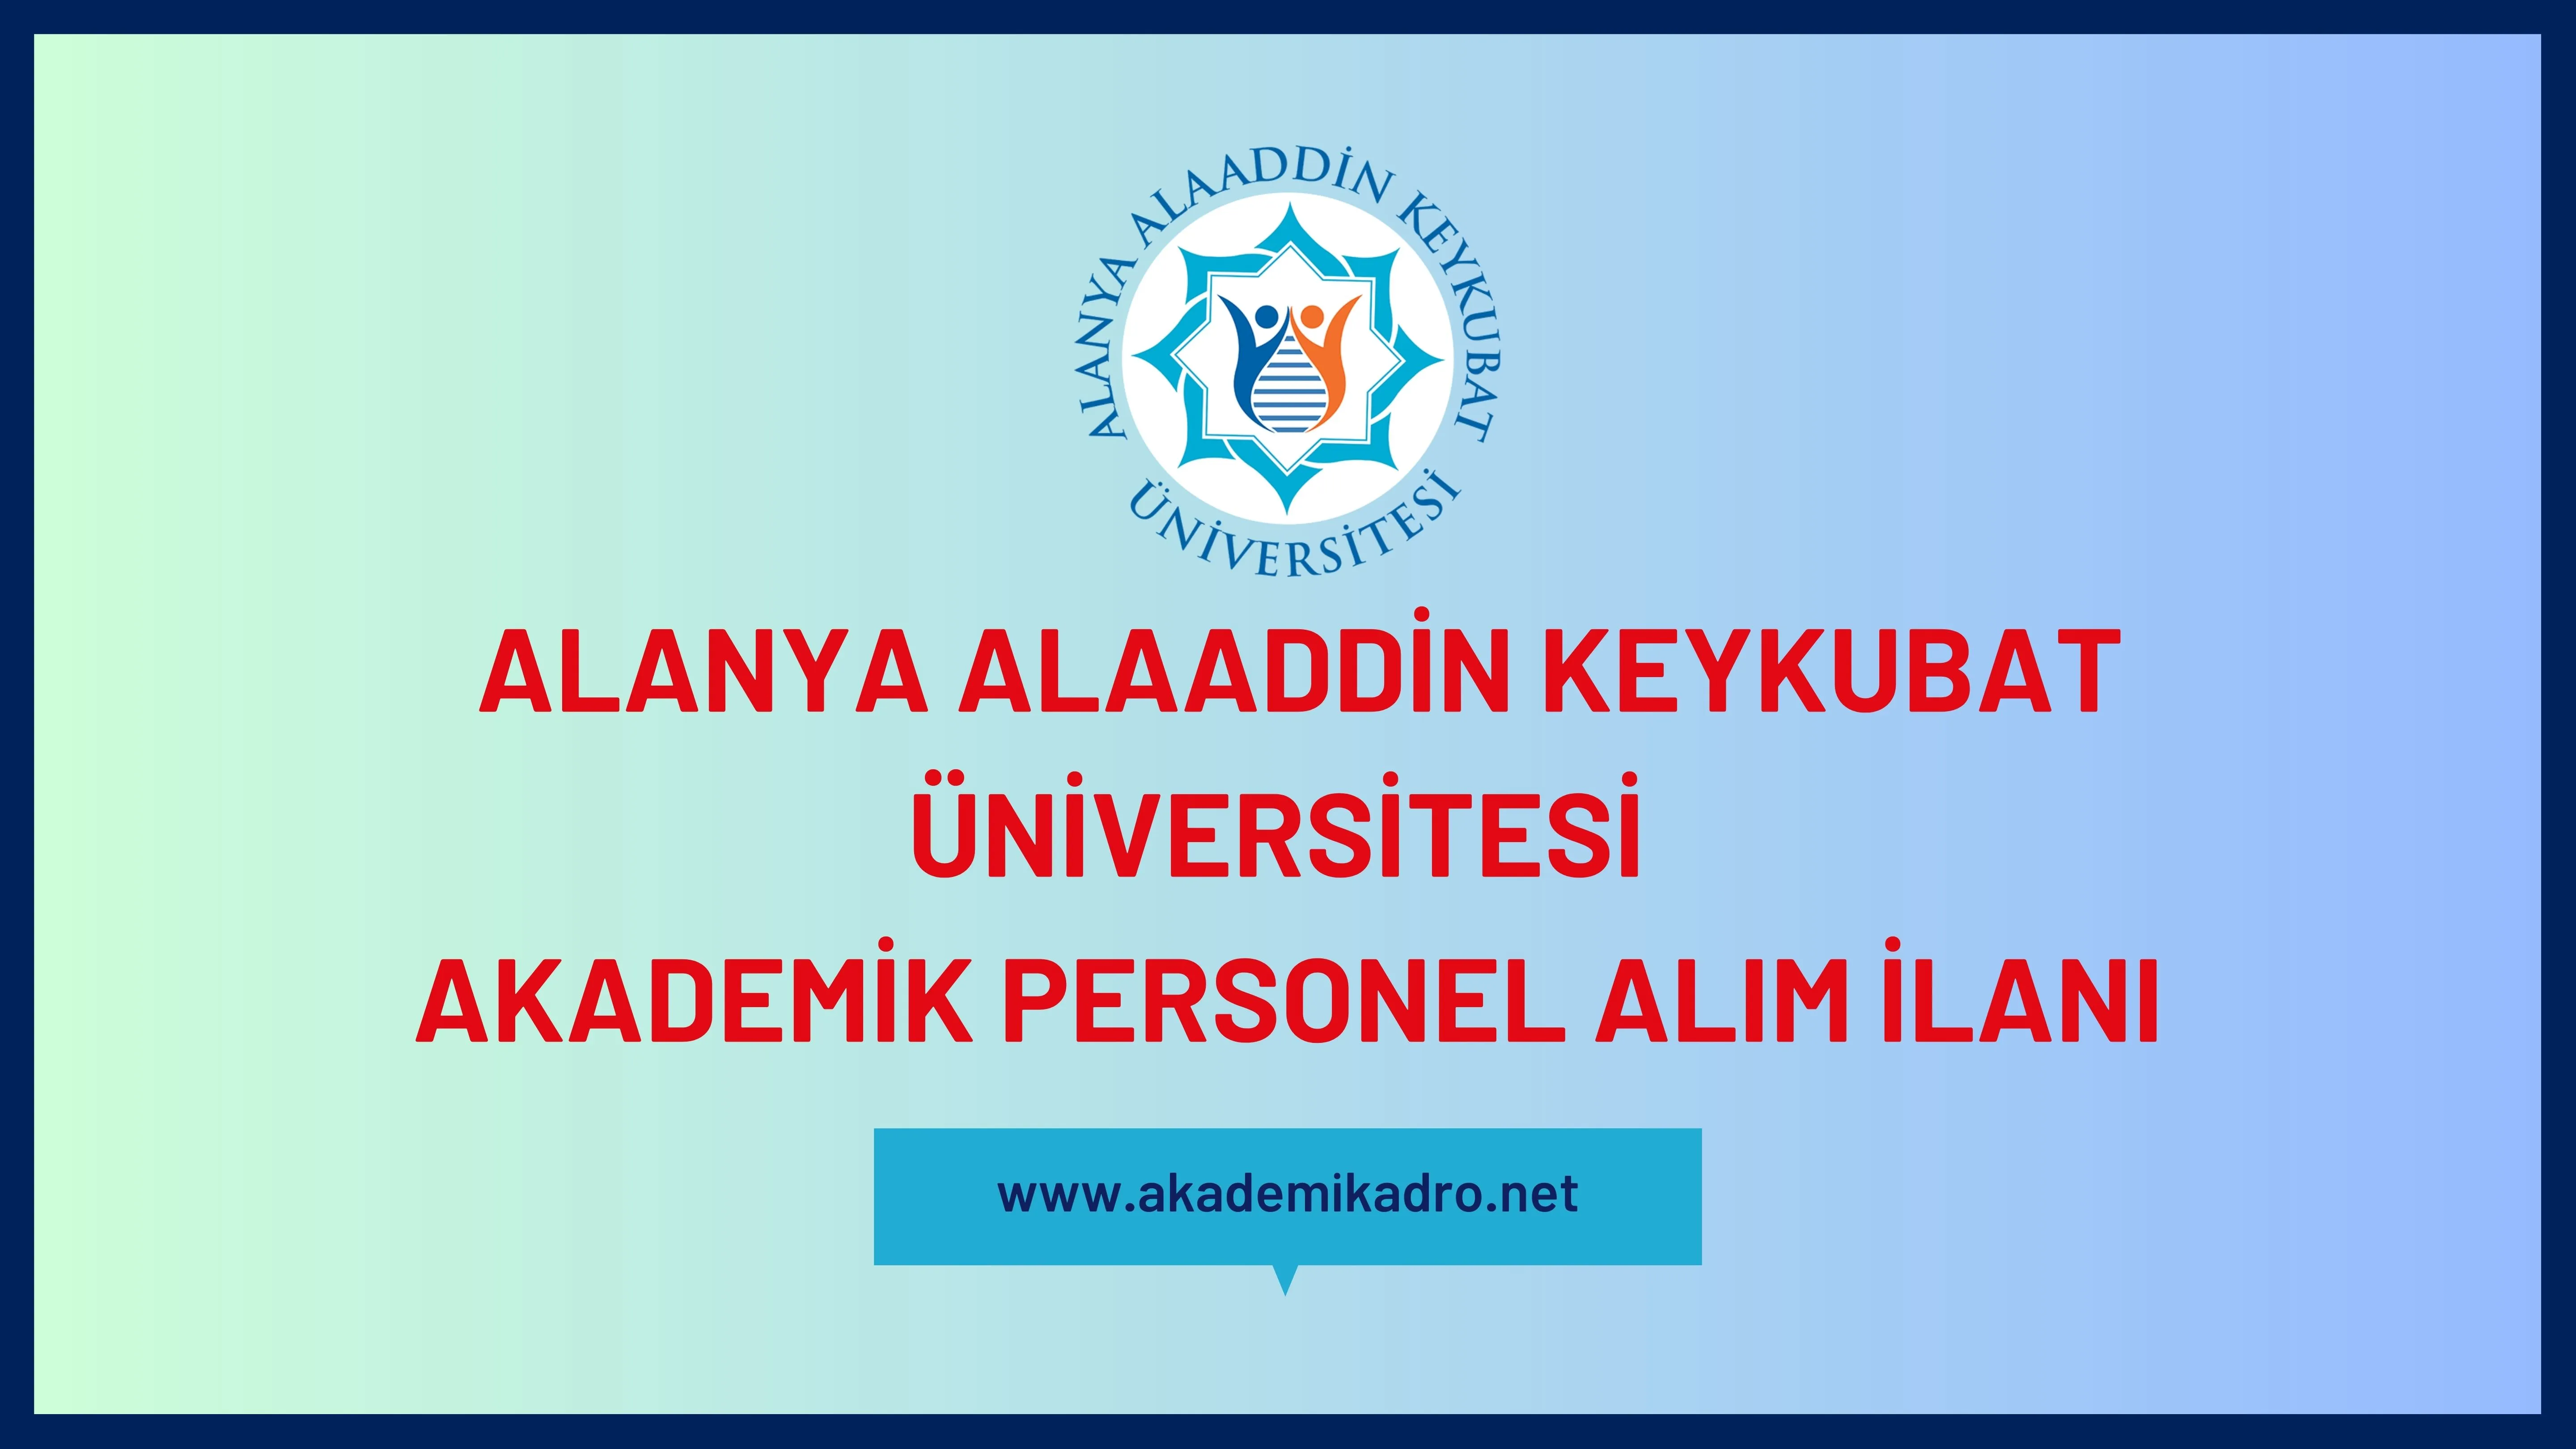 Alanya Alaaddin Keykubat Üniversitesi birçok alandan 18 akademik personel alacak.